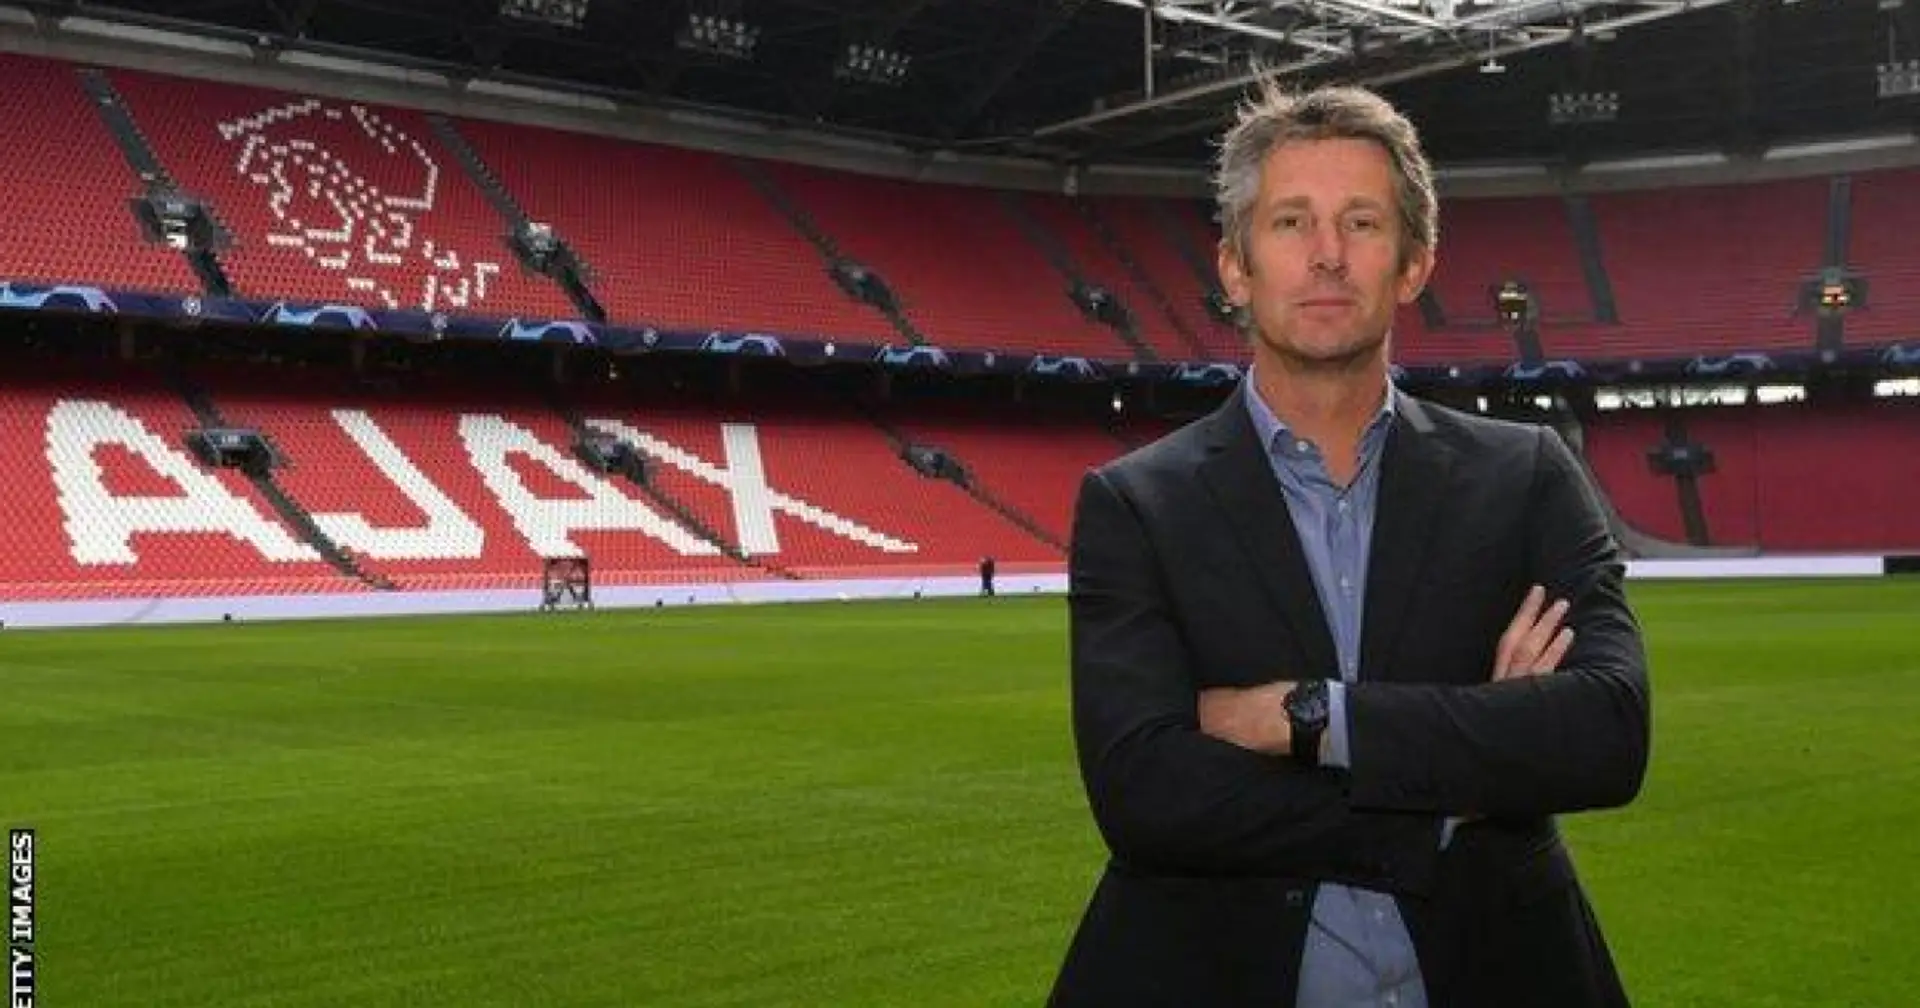 Edwin van der Sar resigns as Ajax CEO